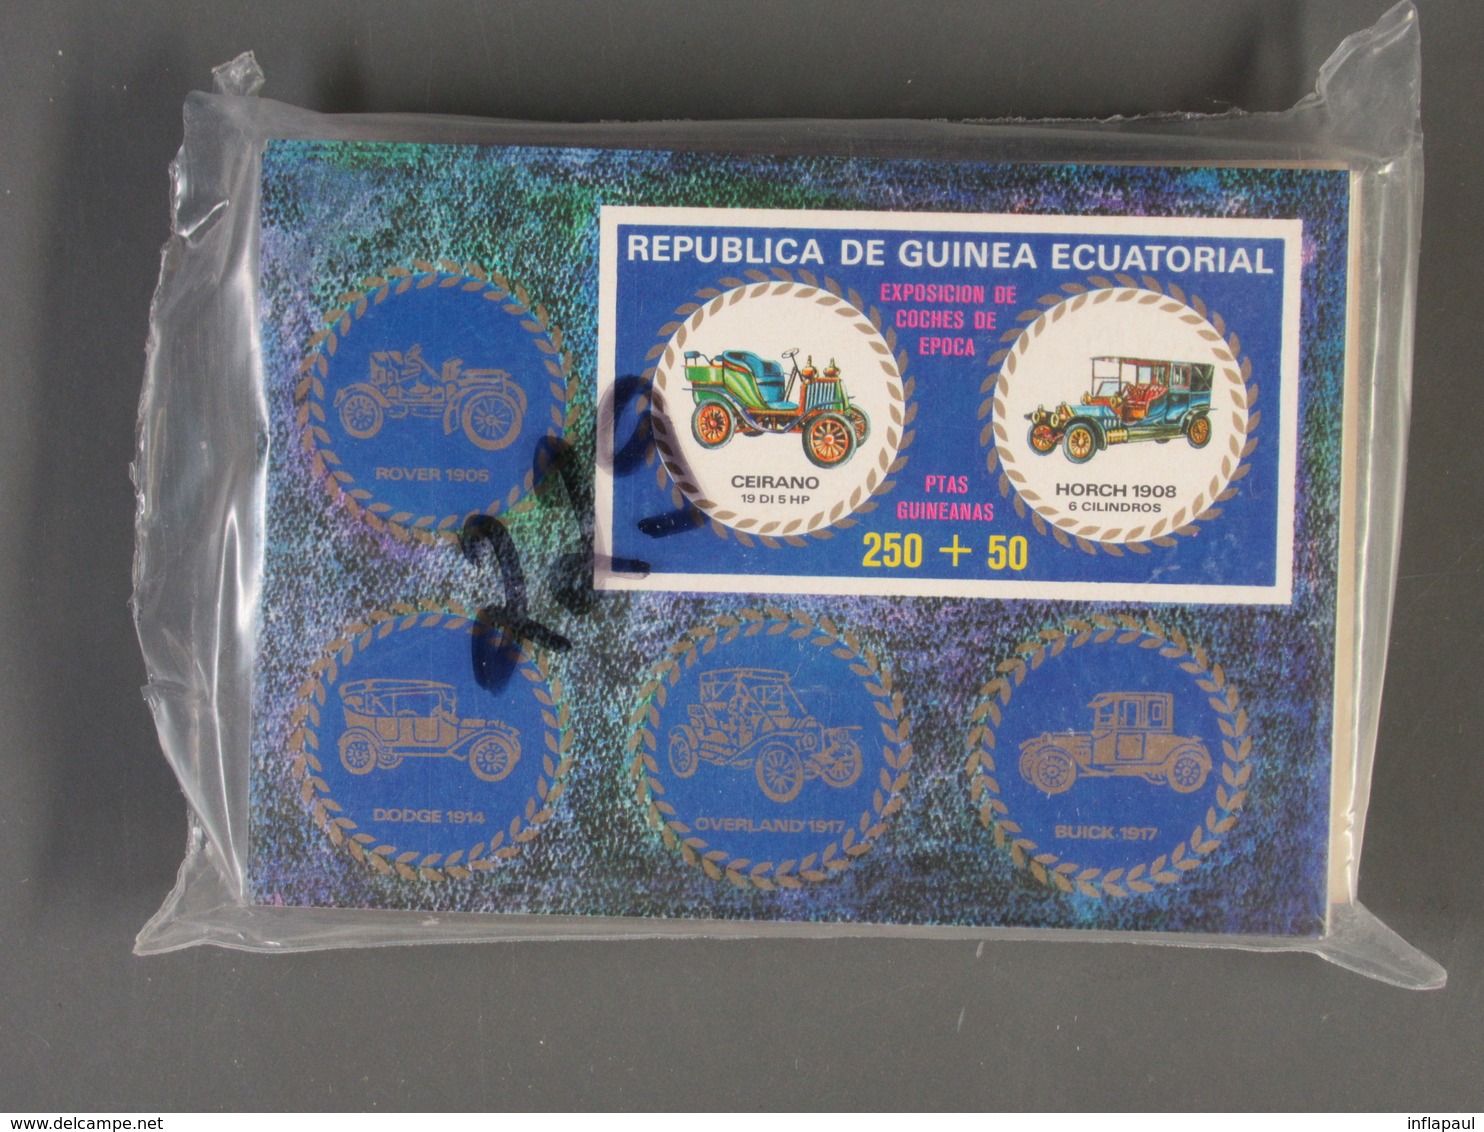 Äquatorialguinea - 20 versch.Blöcke per 100 also 2000 Blöcke postfrisch MNH (2233)